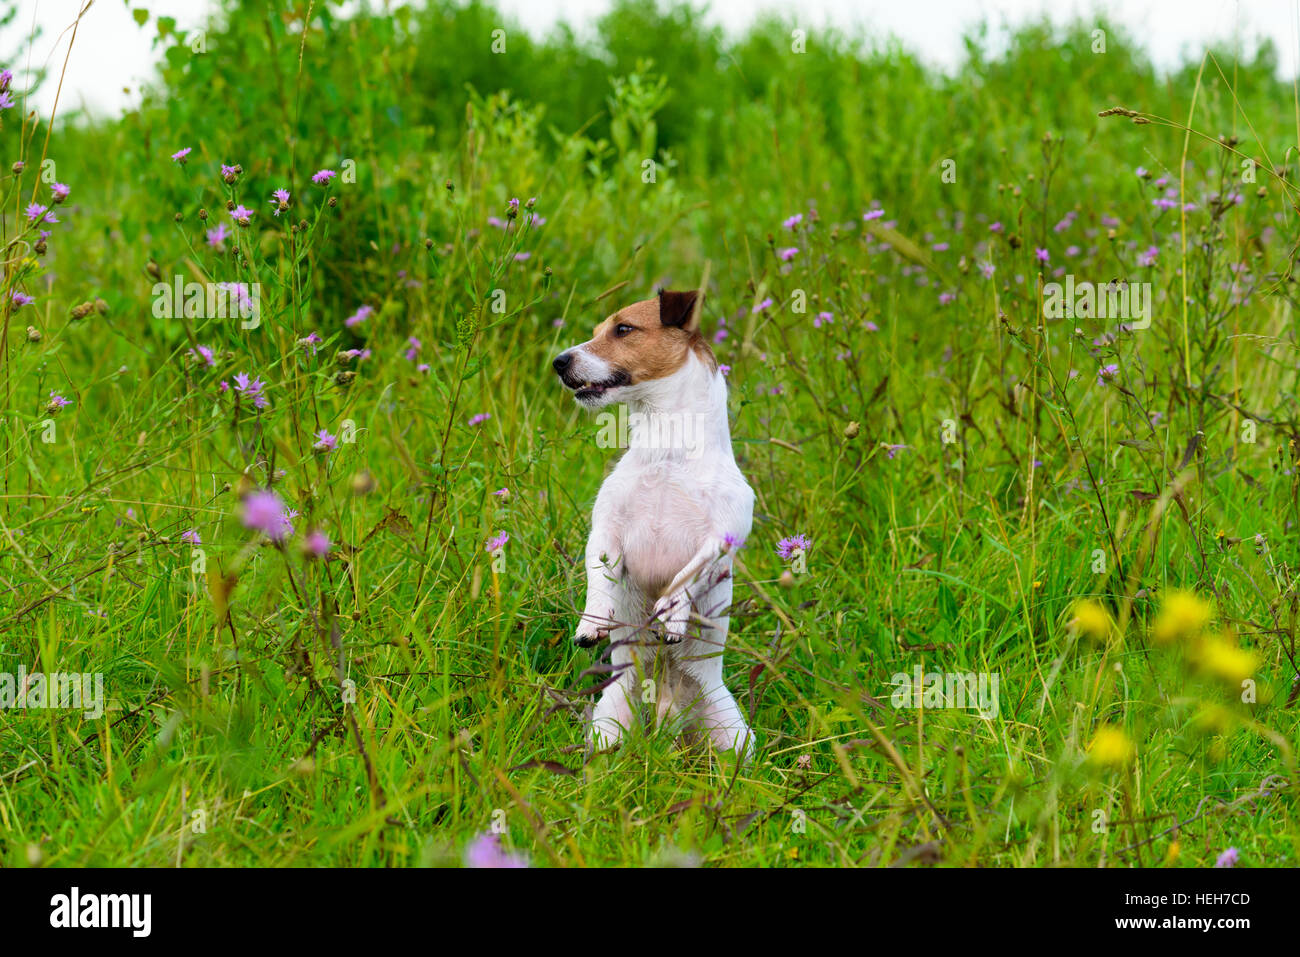 Cane in verde erba alta seduta come marmotta guardando intorno Foto Stock